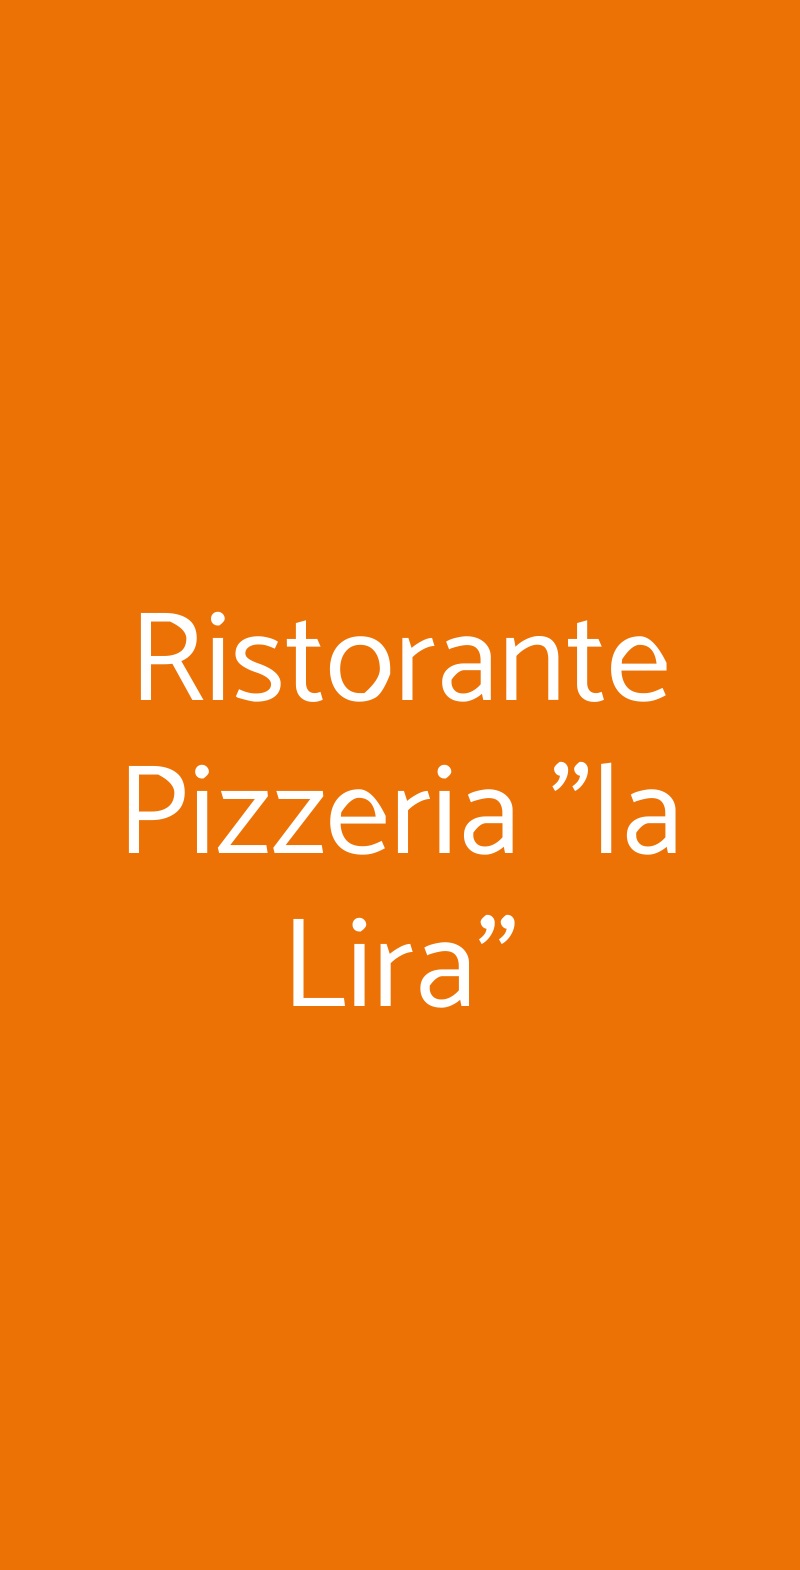 Ristorante Pizzeria "la Lira" Lonigo menù 1 pagina